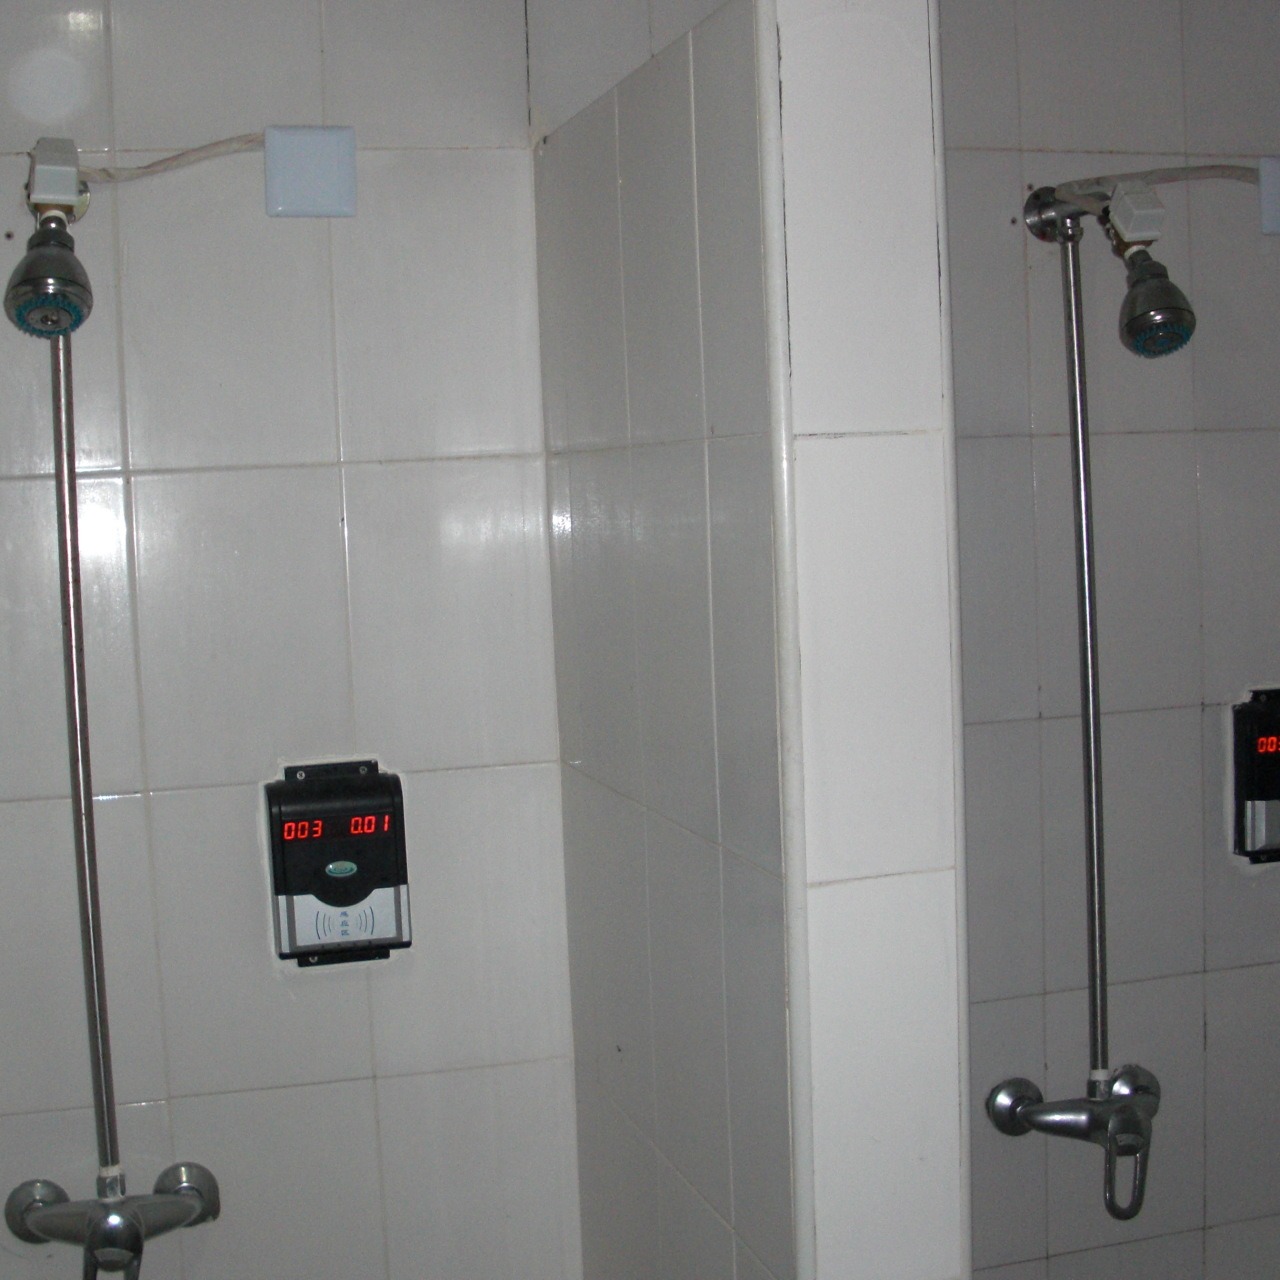 浴室智能卡控水器,IC卡水控器,澡堂水控机